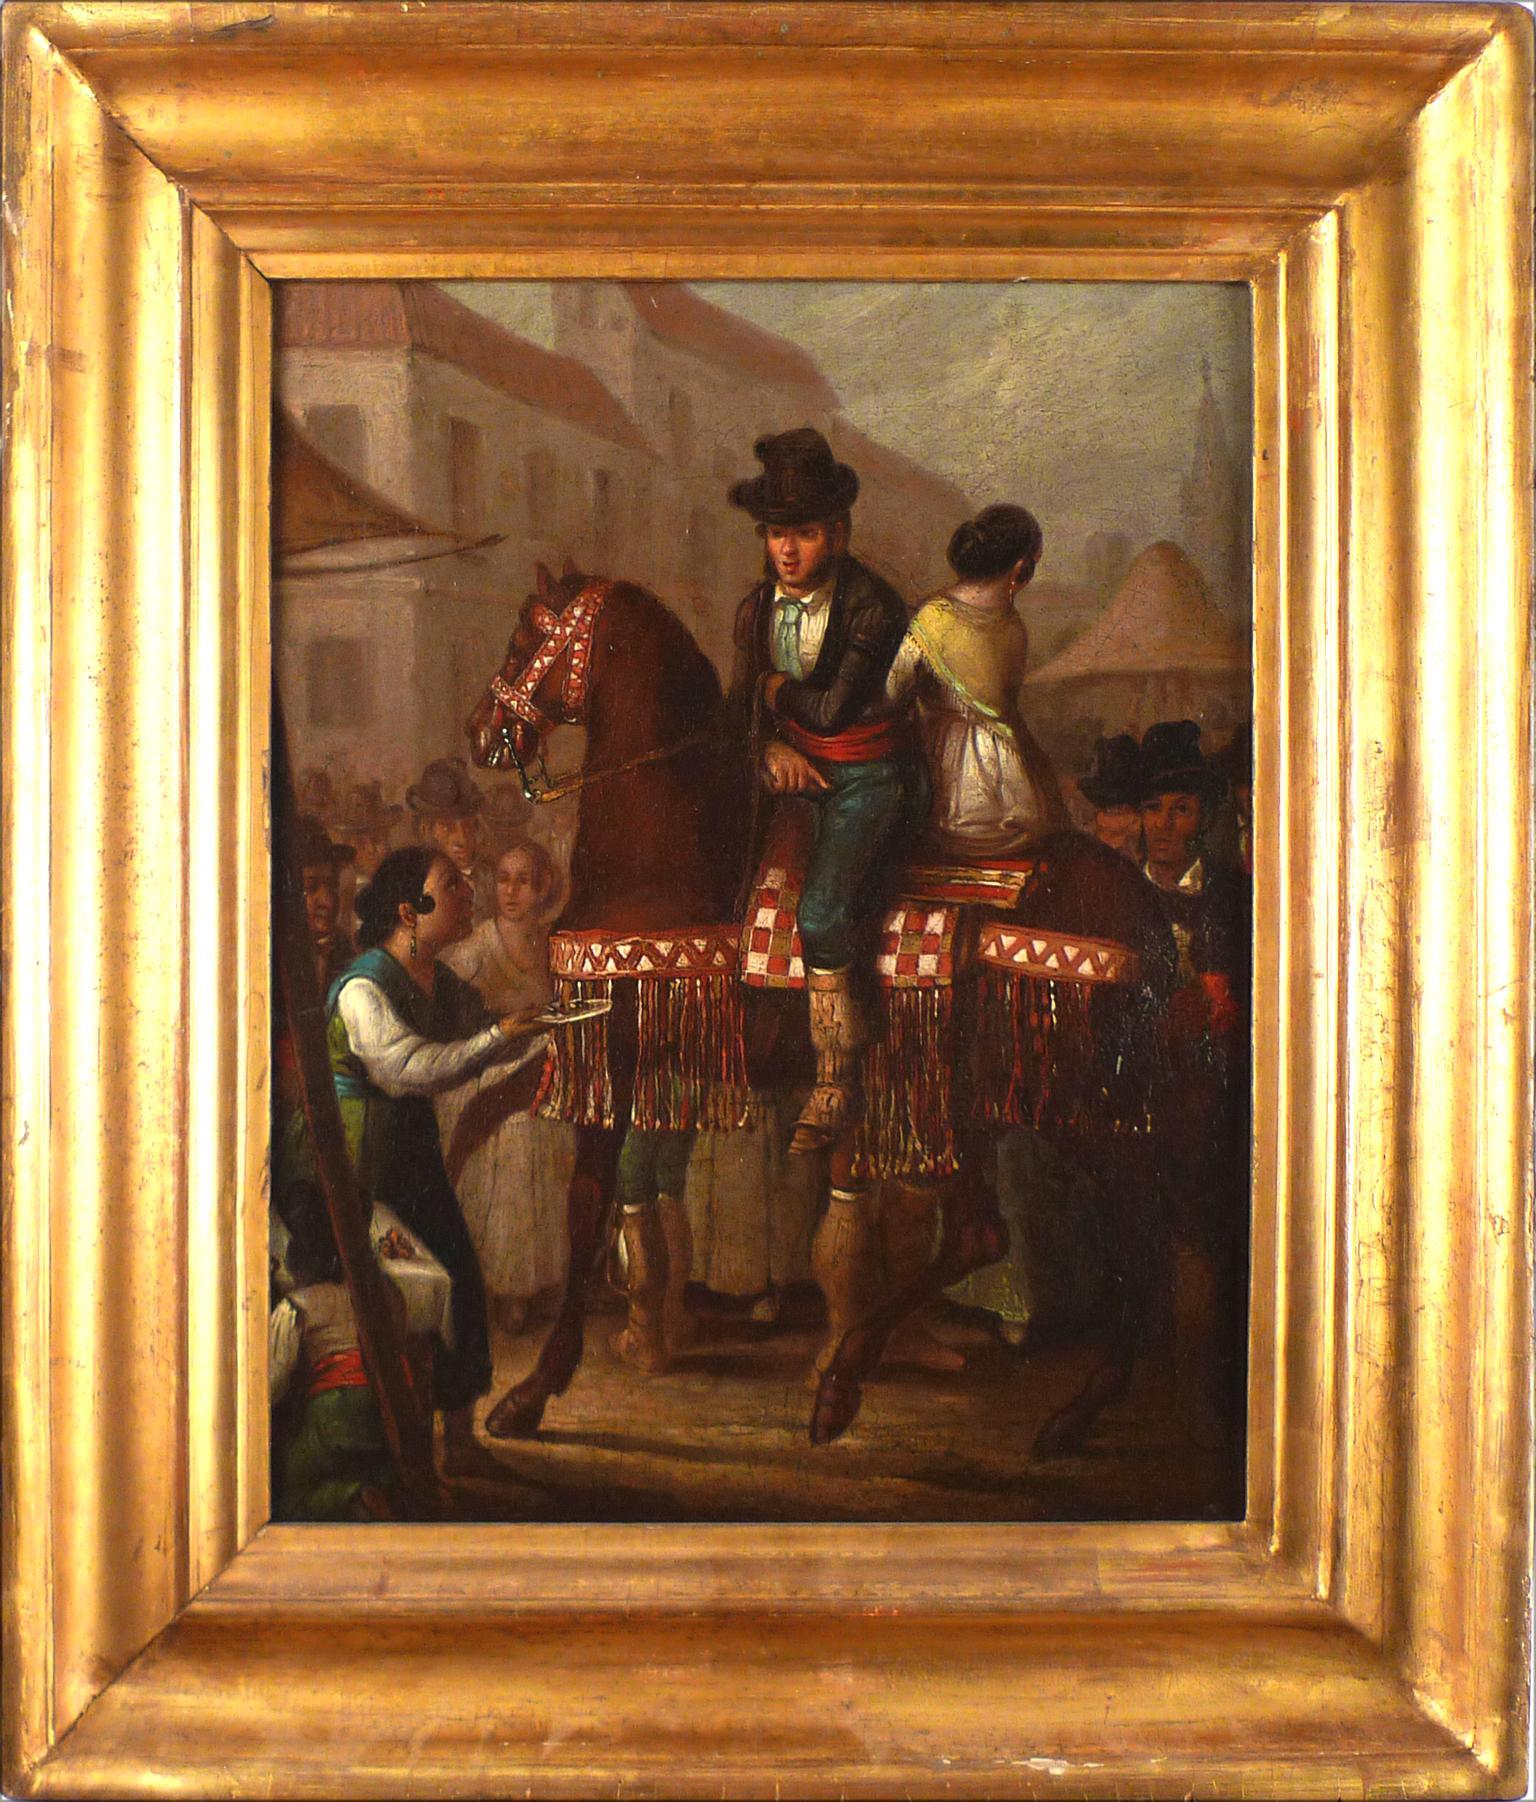 ÁNGEL MARÍA CORTELLINI
Spanish, 1819 - 1887
OFRECIENDO UNA COPA
oil on canvas
13-1/4 x 11 inches (33.5 x 28 cm.)
framed: 17-1/4 x 15 (44 x 38 cm.)

Ángel María Cortellini. Sanlúcar de Barrameda (Cádiz), 27.09.1819 – Madrid, 1887. Painter.

Ángel